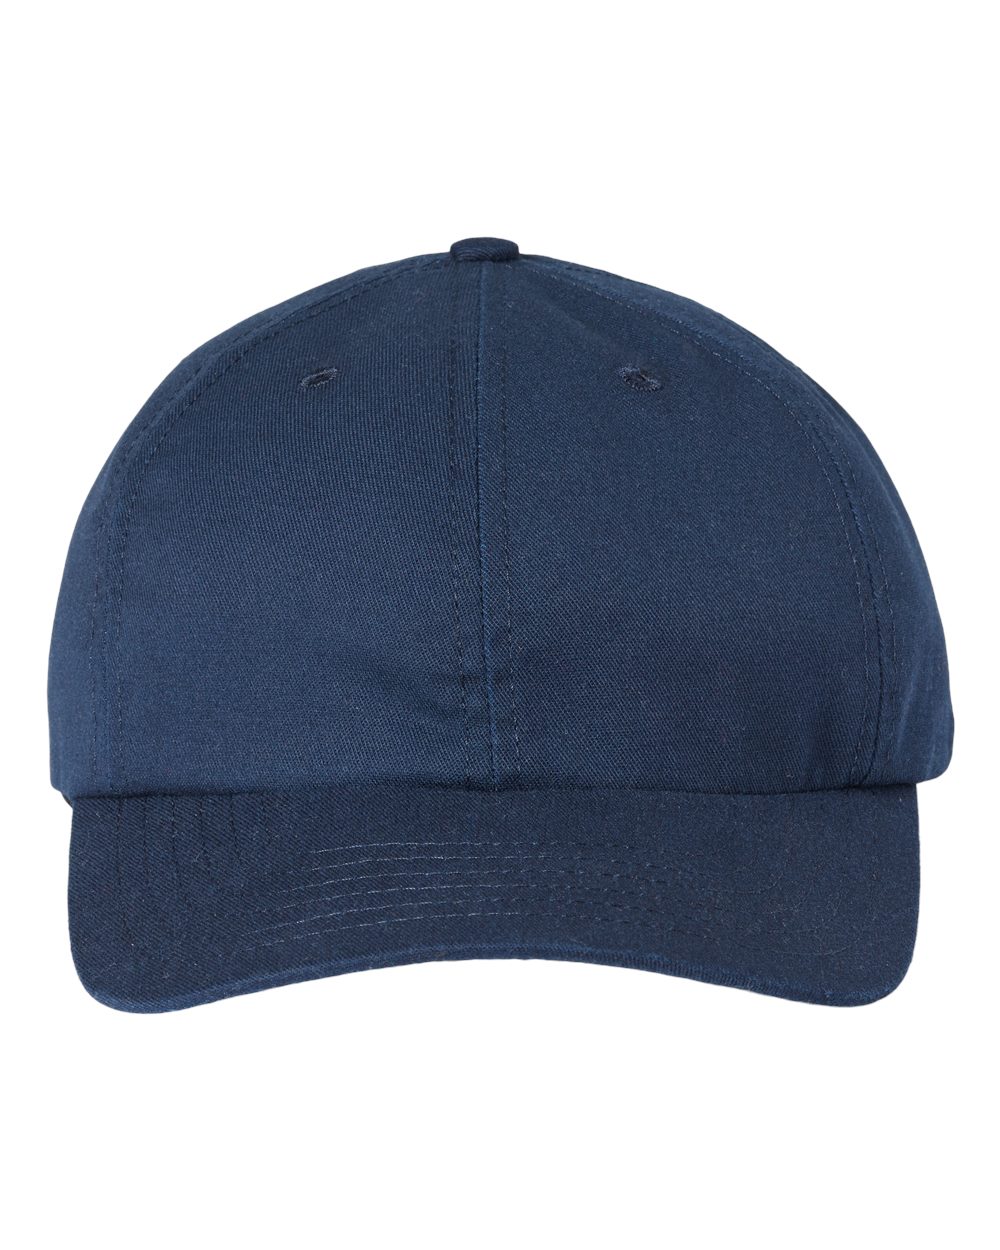 Classic Caps Mens USA Made Dad Cap Hat USA200 Snapback Closure Pre Curved Visor